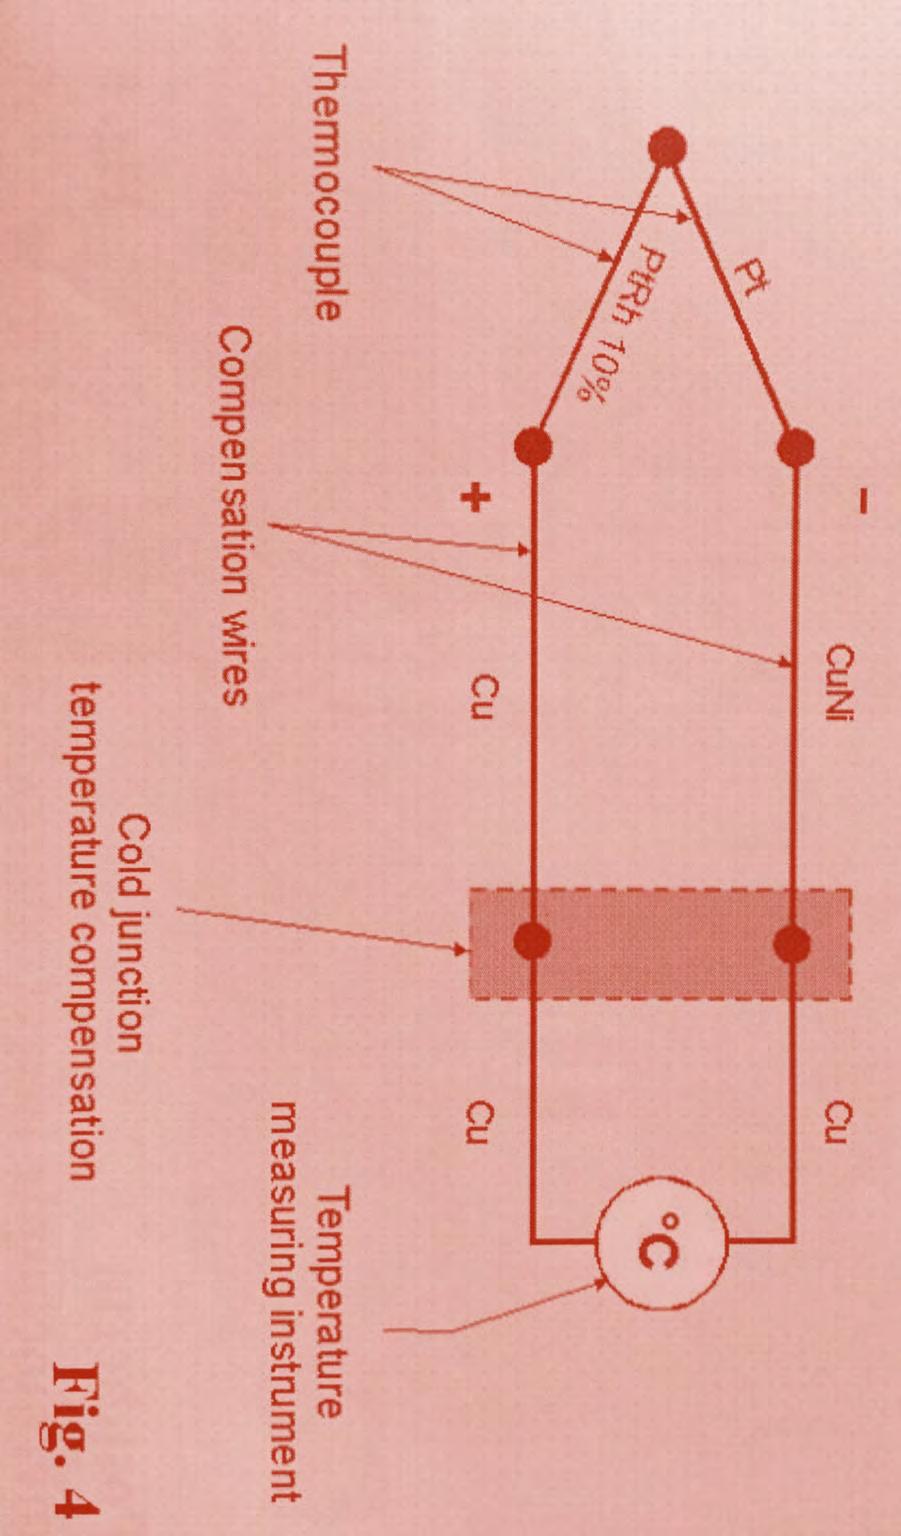 5. The measurement chain Sensor tip 1300-1800 C Compensation wire < 100 C Measuring instrument < 50